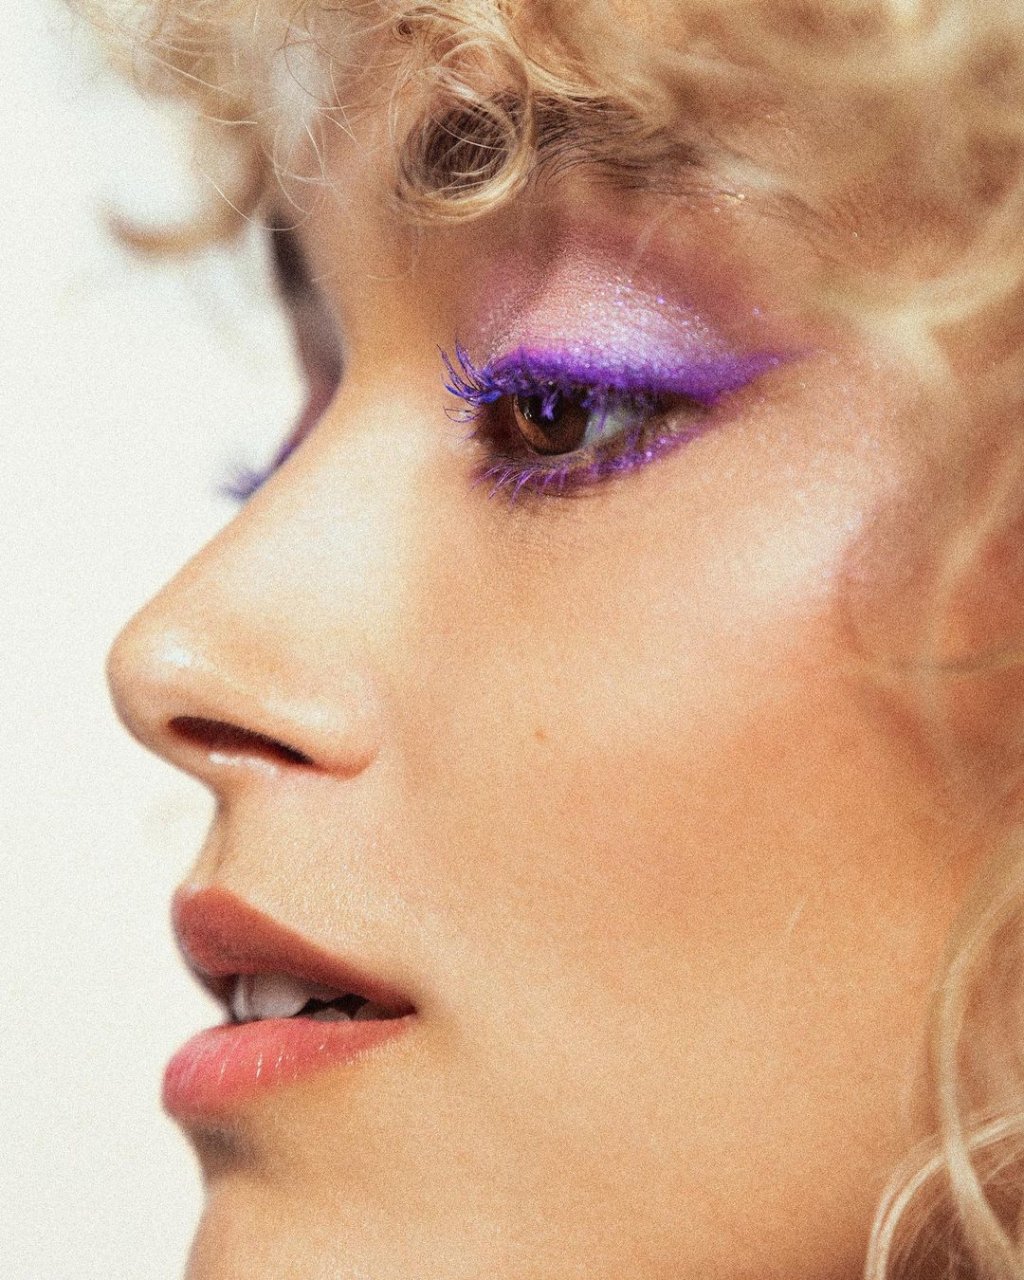 Modelo Louane Lefranc com maquiagem com rímel lilás feita pela maquiadora Jessica Bringand.